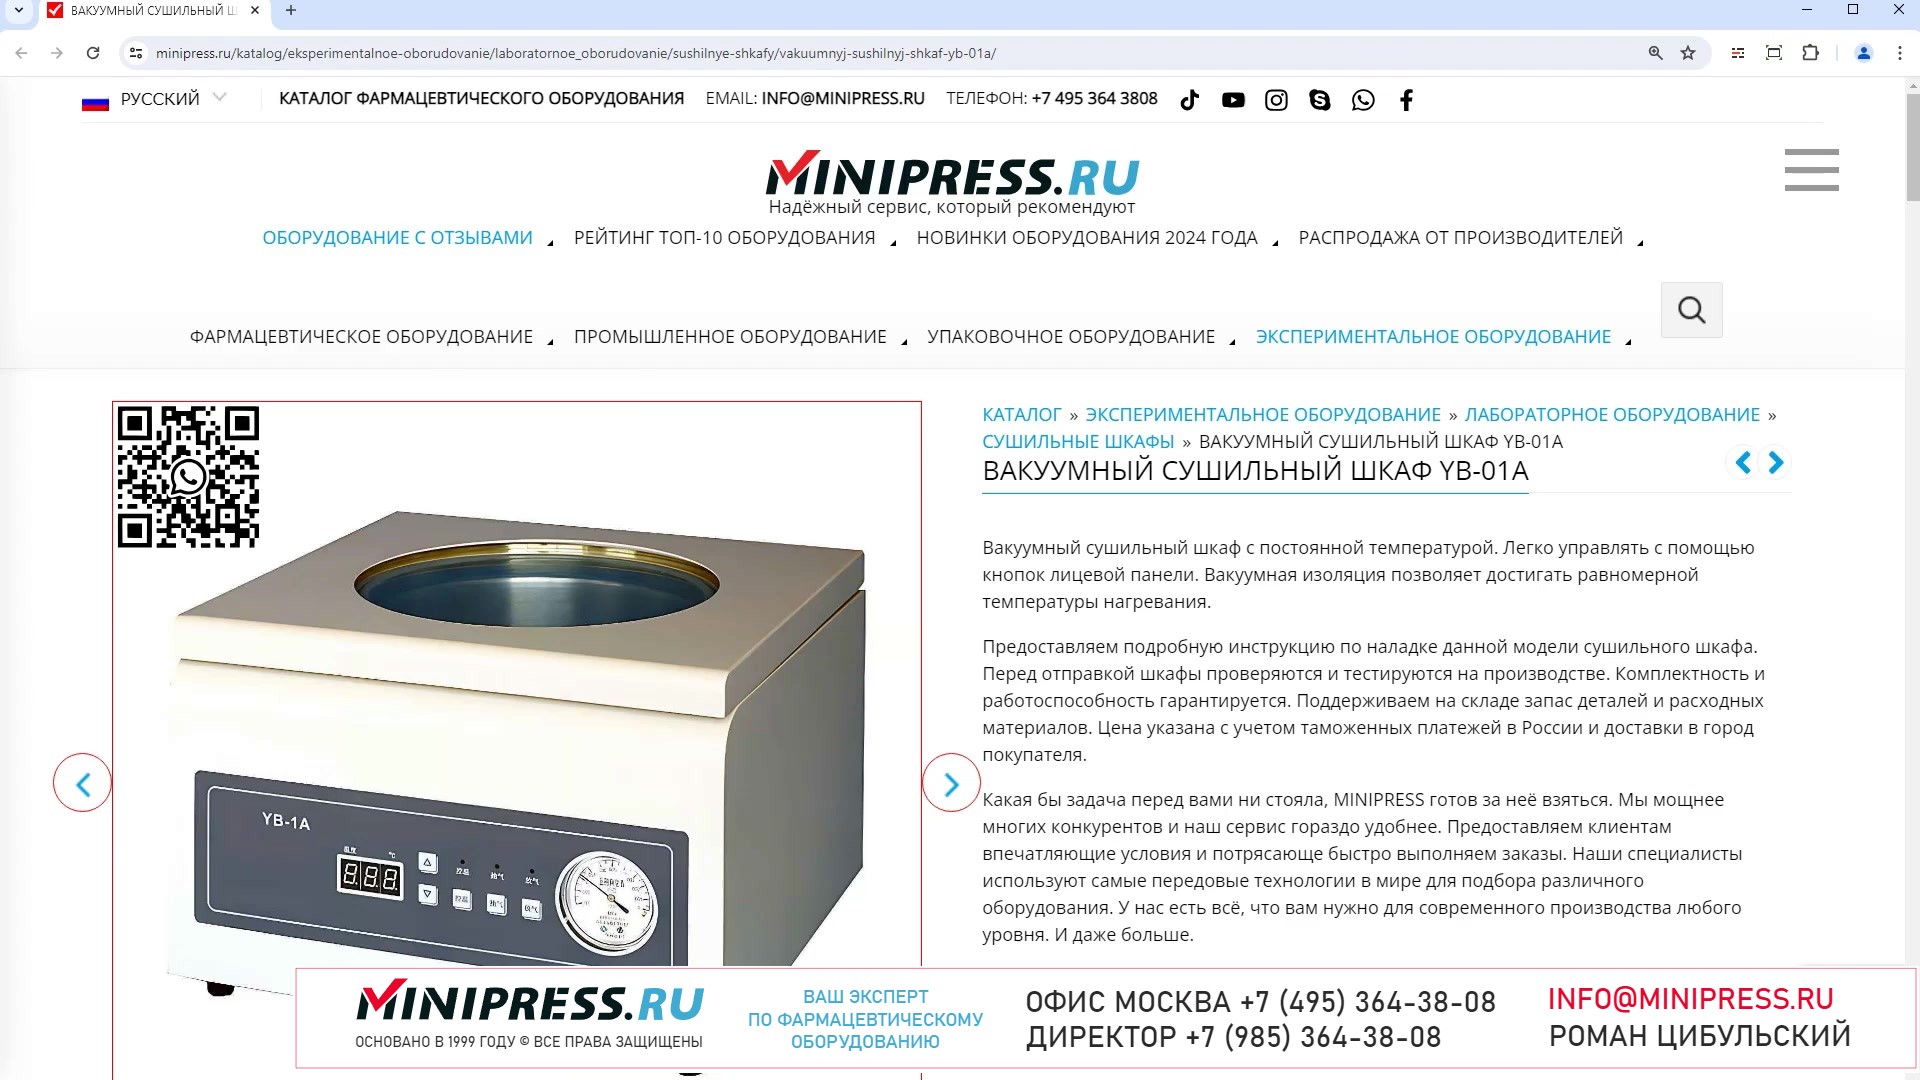 Minipress.ru Вакуумный сушильный шкаф YB-01A